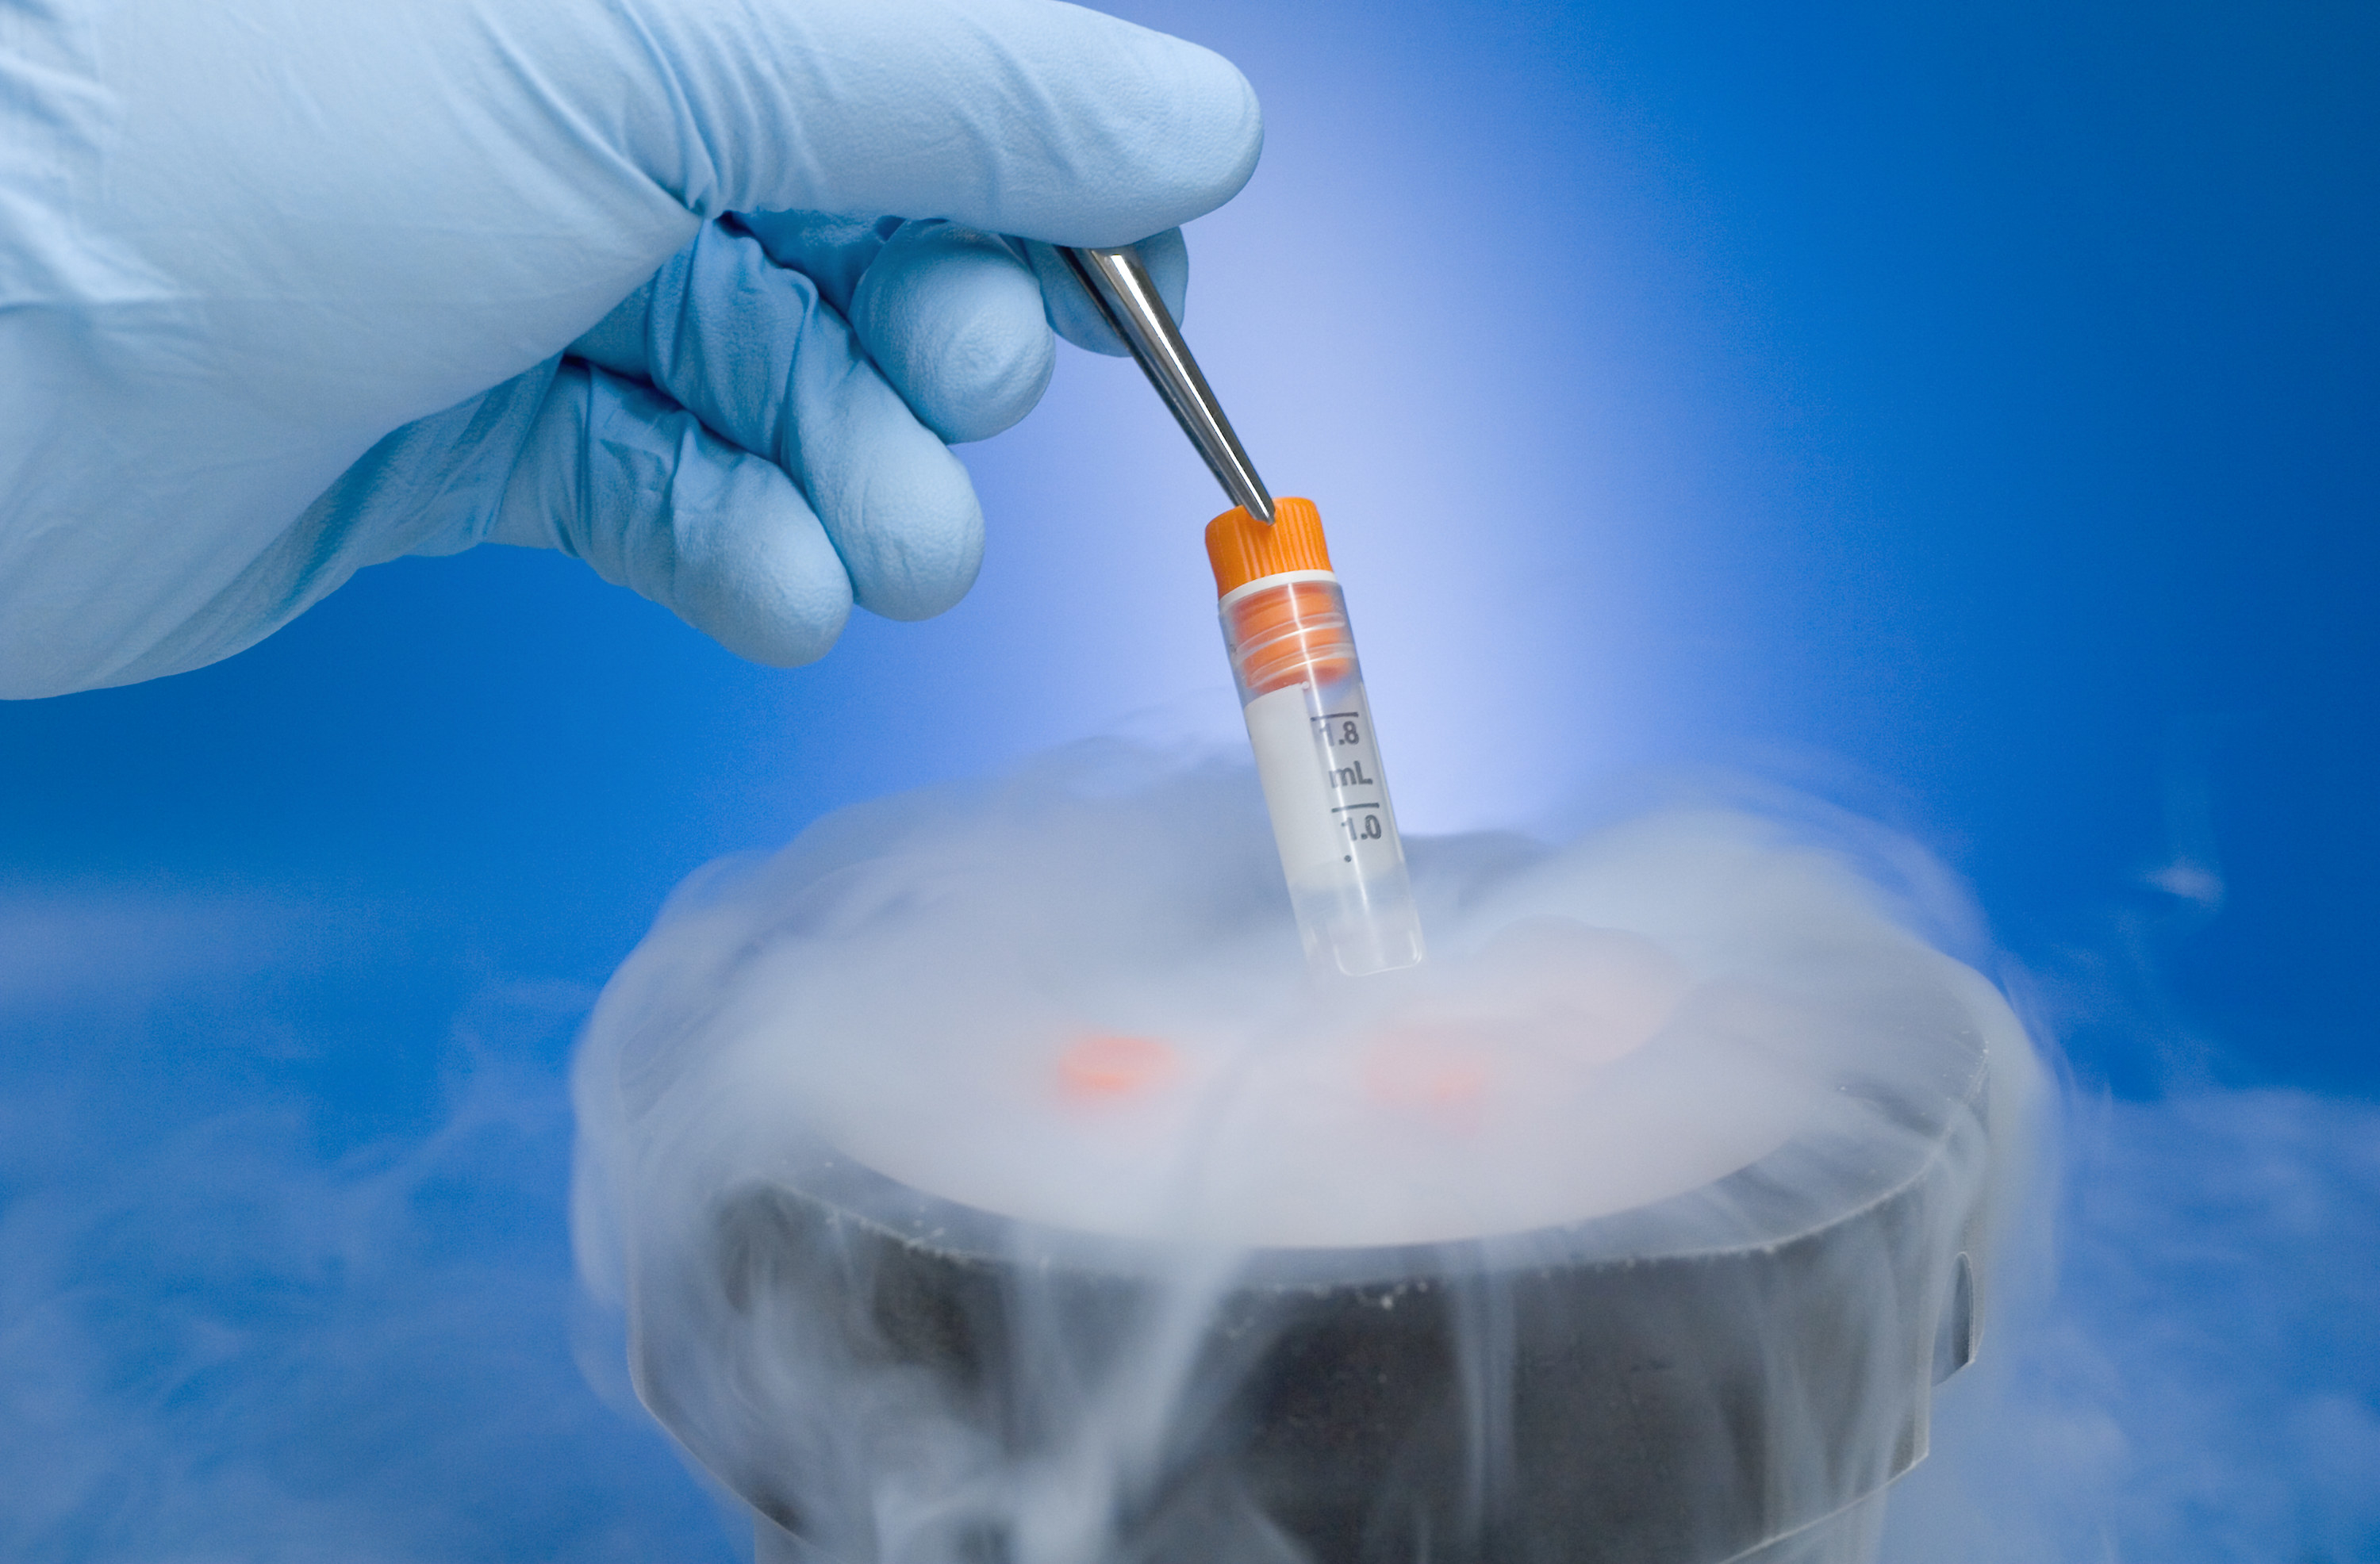 A frozen embryo